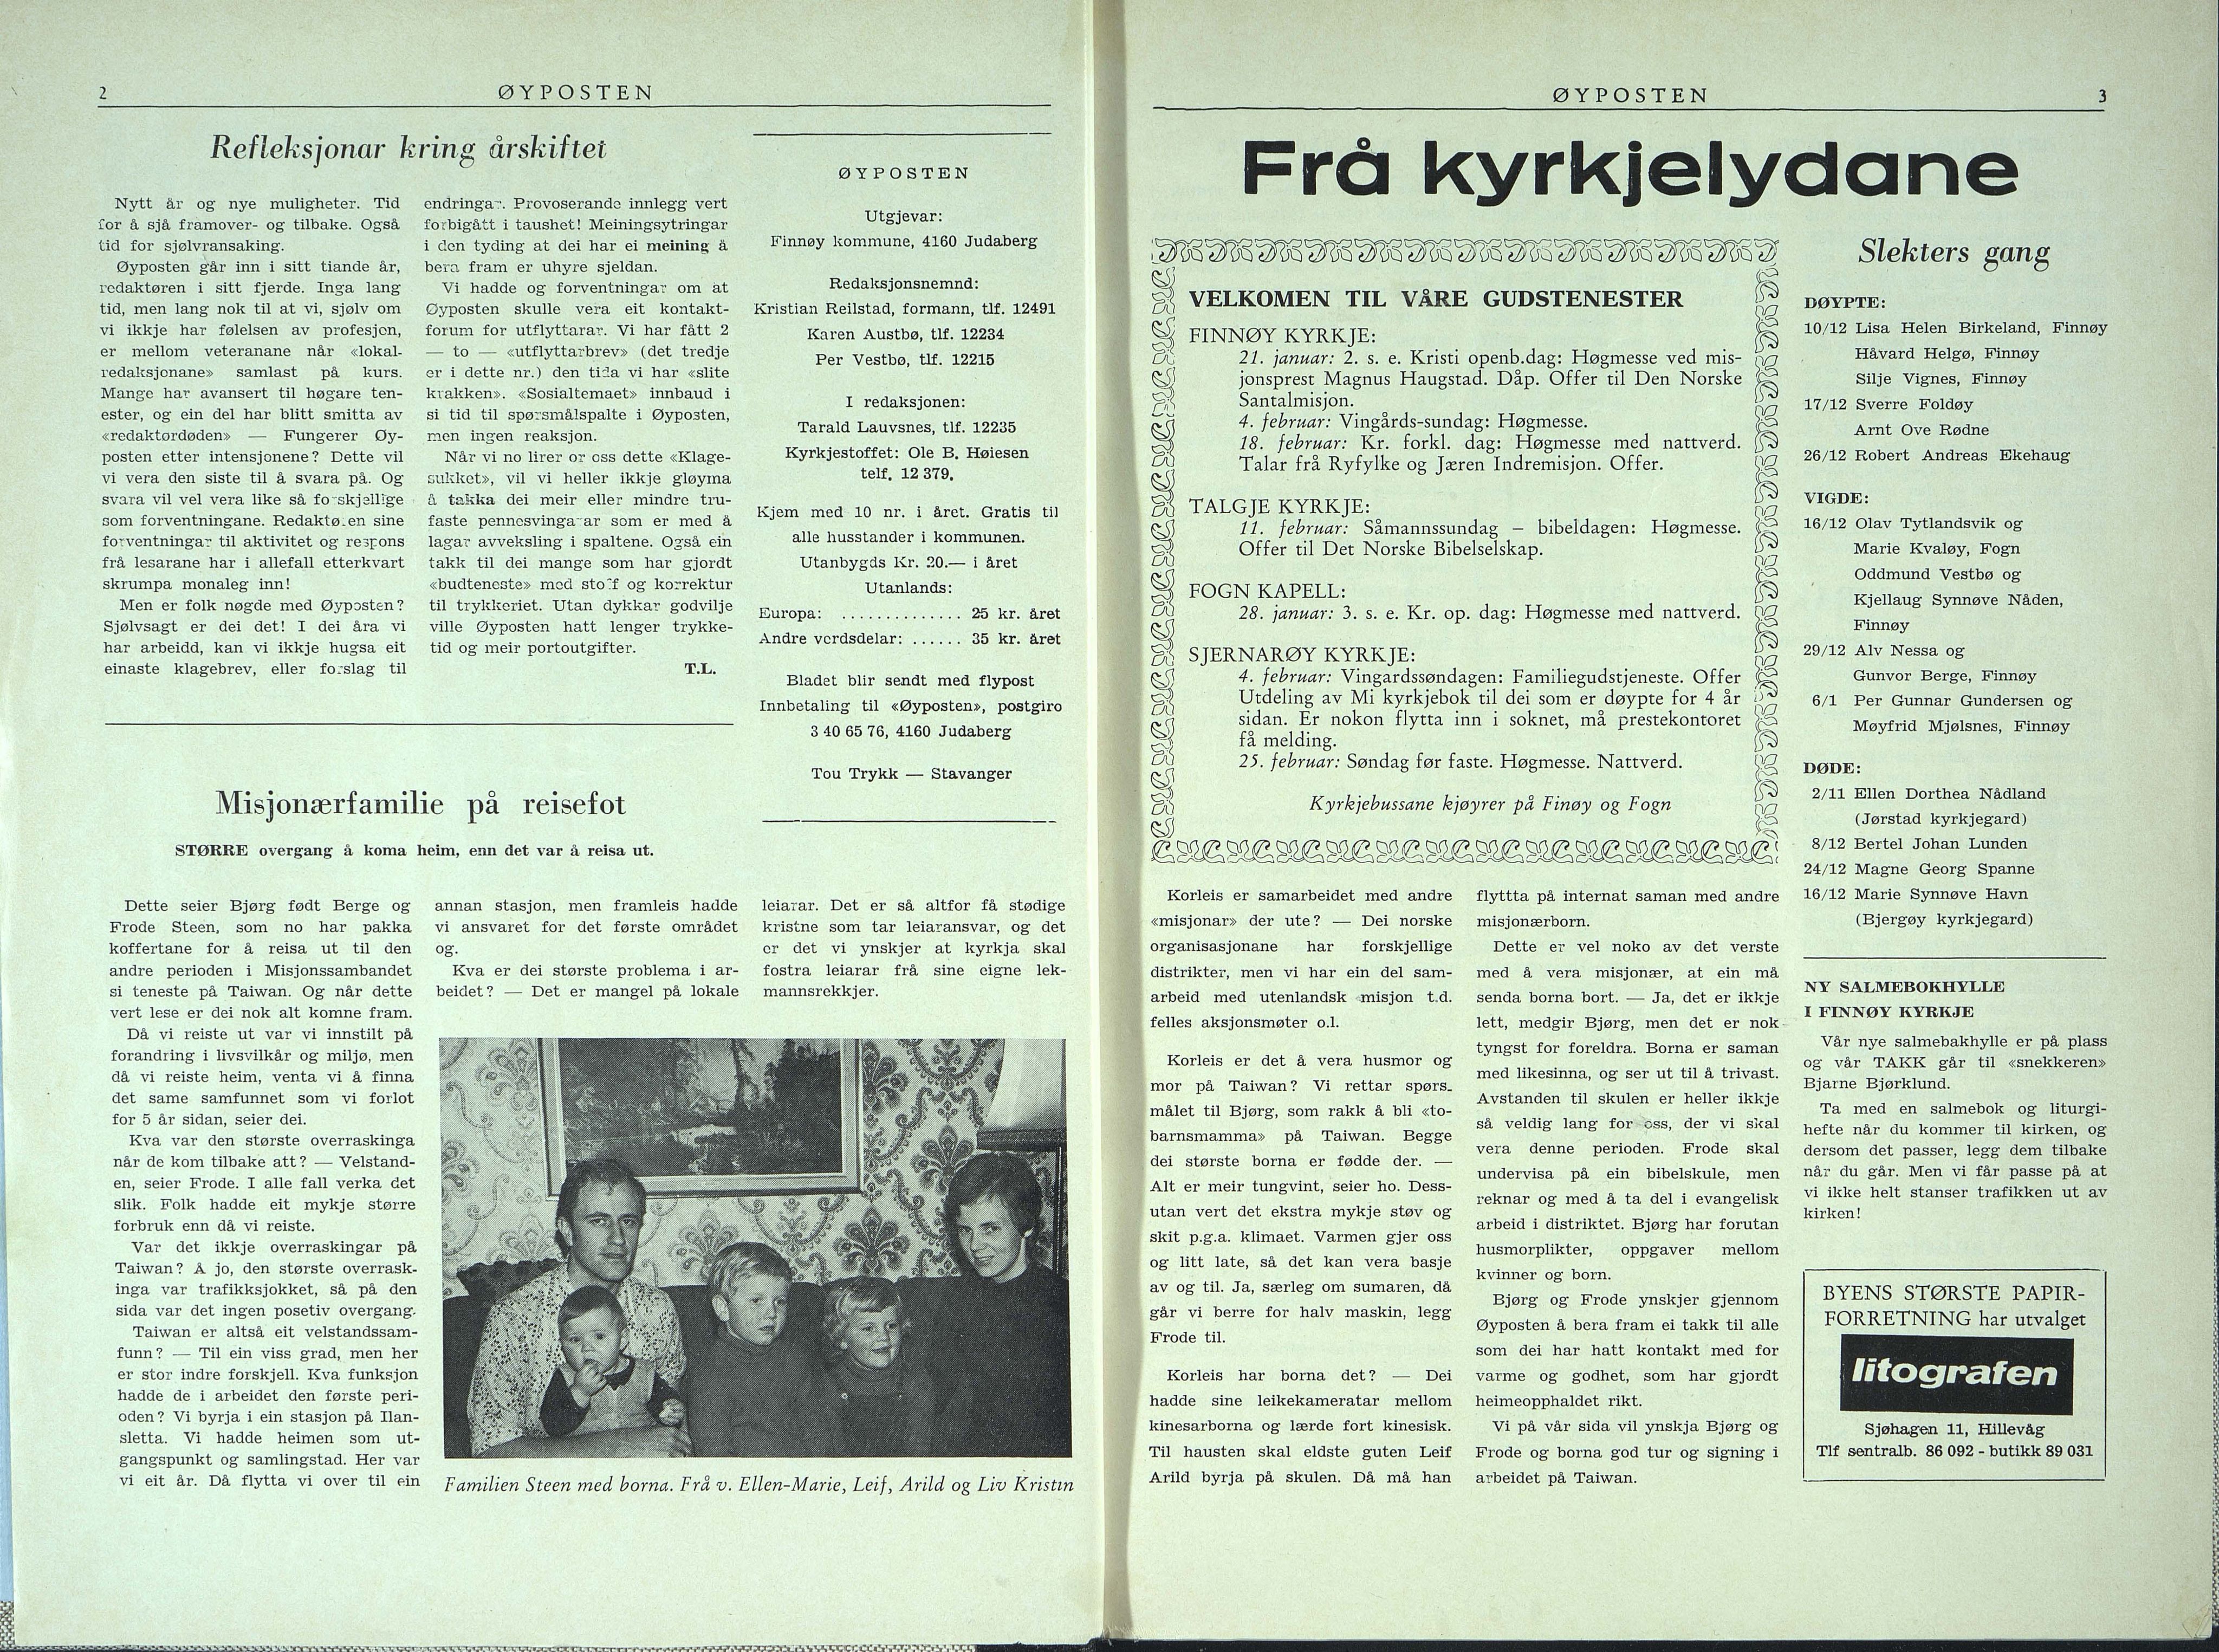 , Finnøy kommune, Øyposten, 1979, 1979